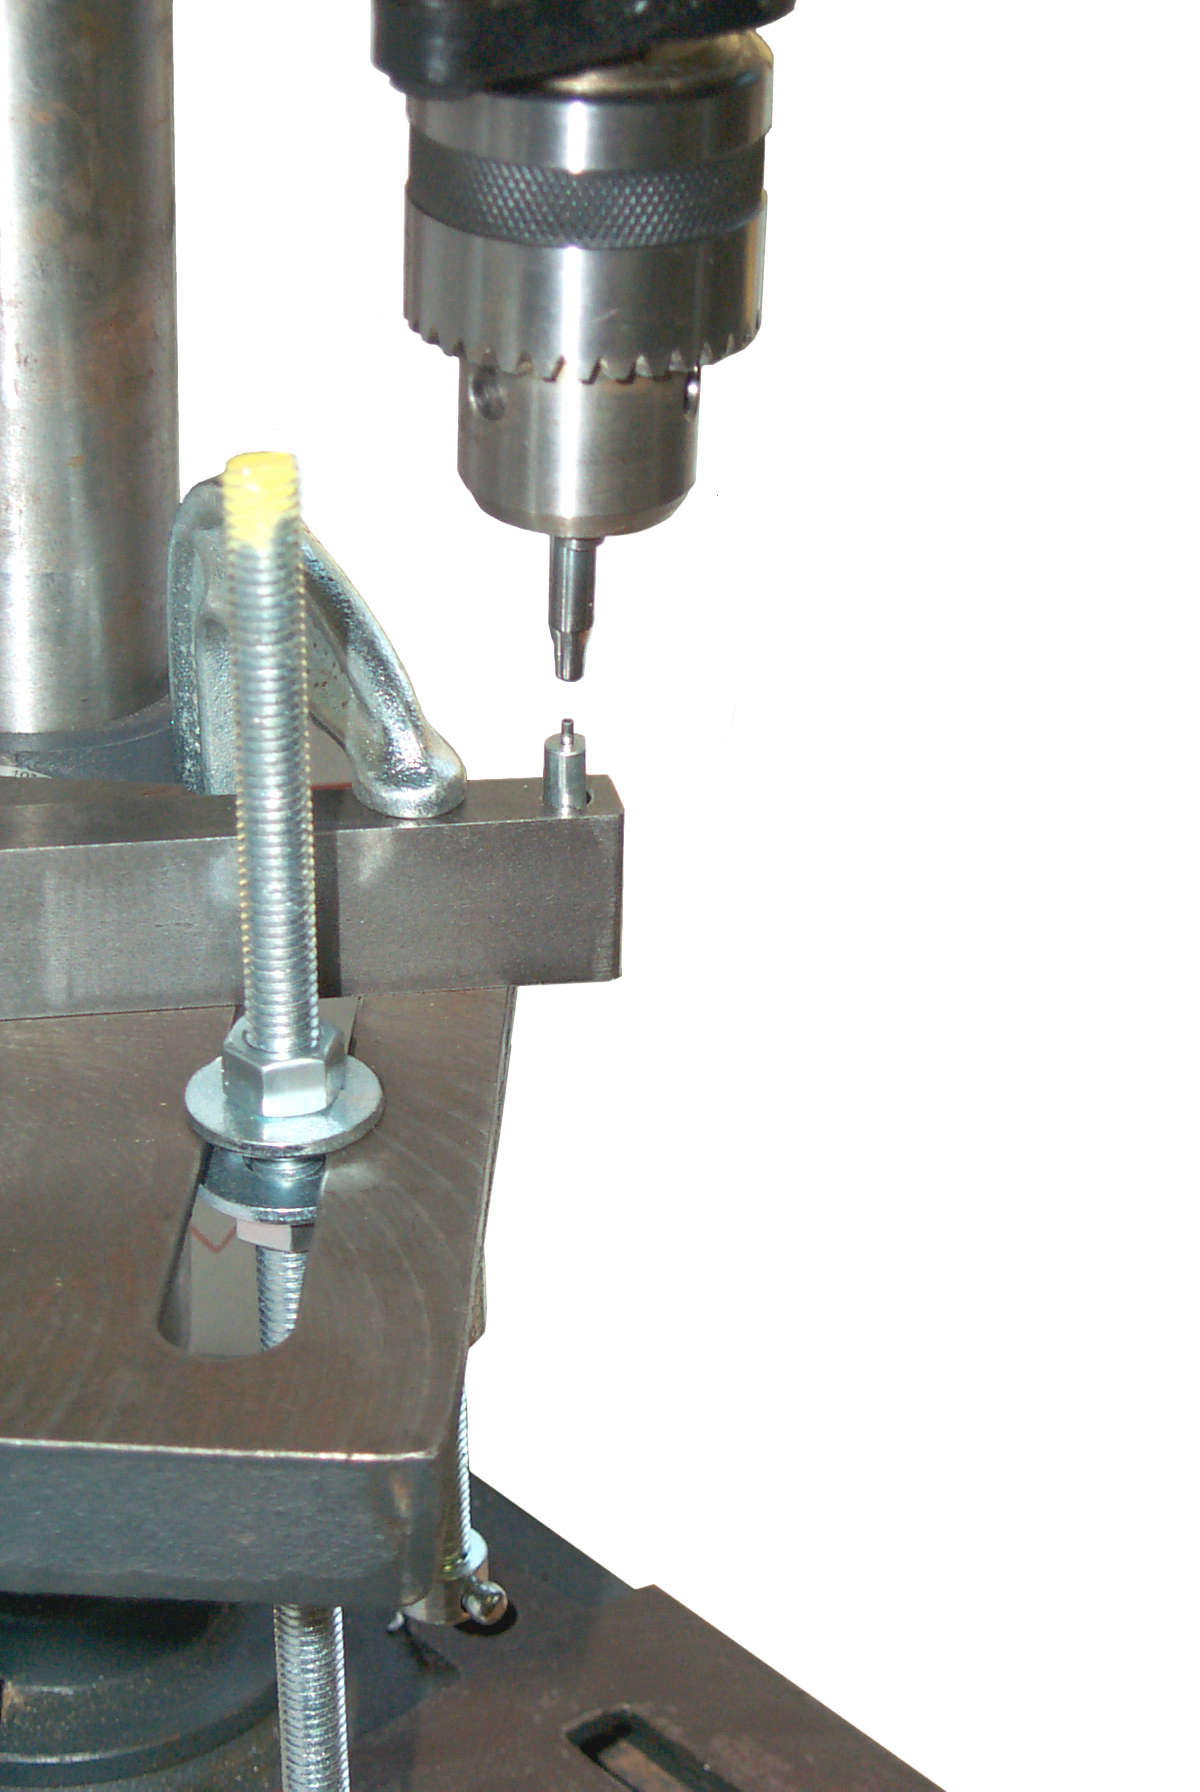 Stimpson 405 Heavy Duty Bench Press Grommet Machine with #2 Die